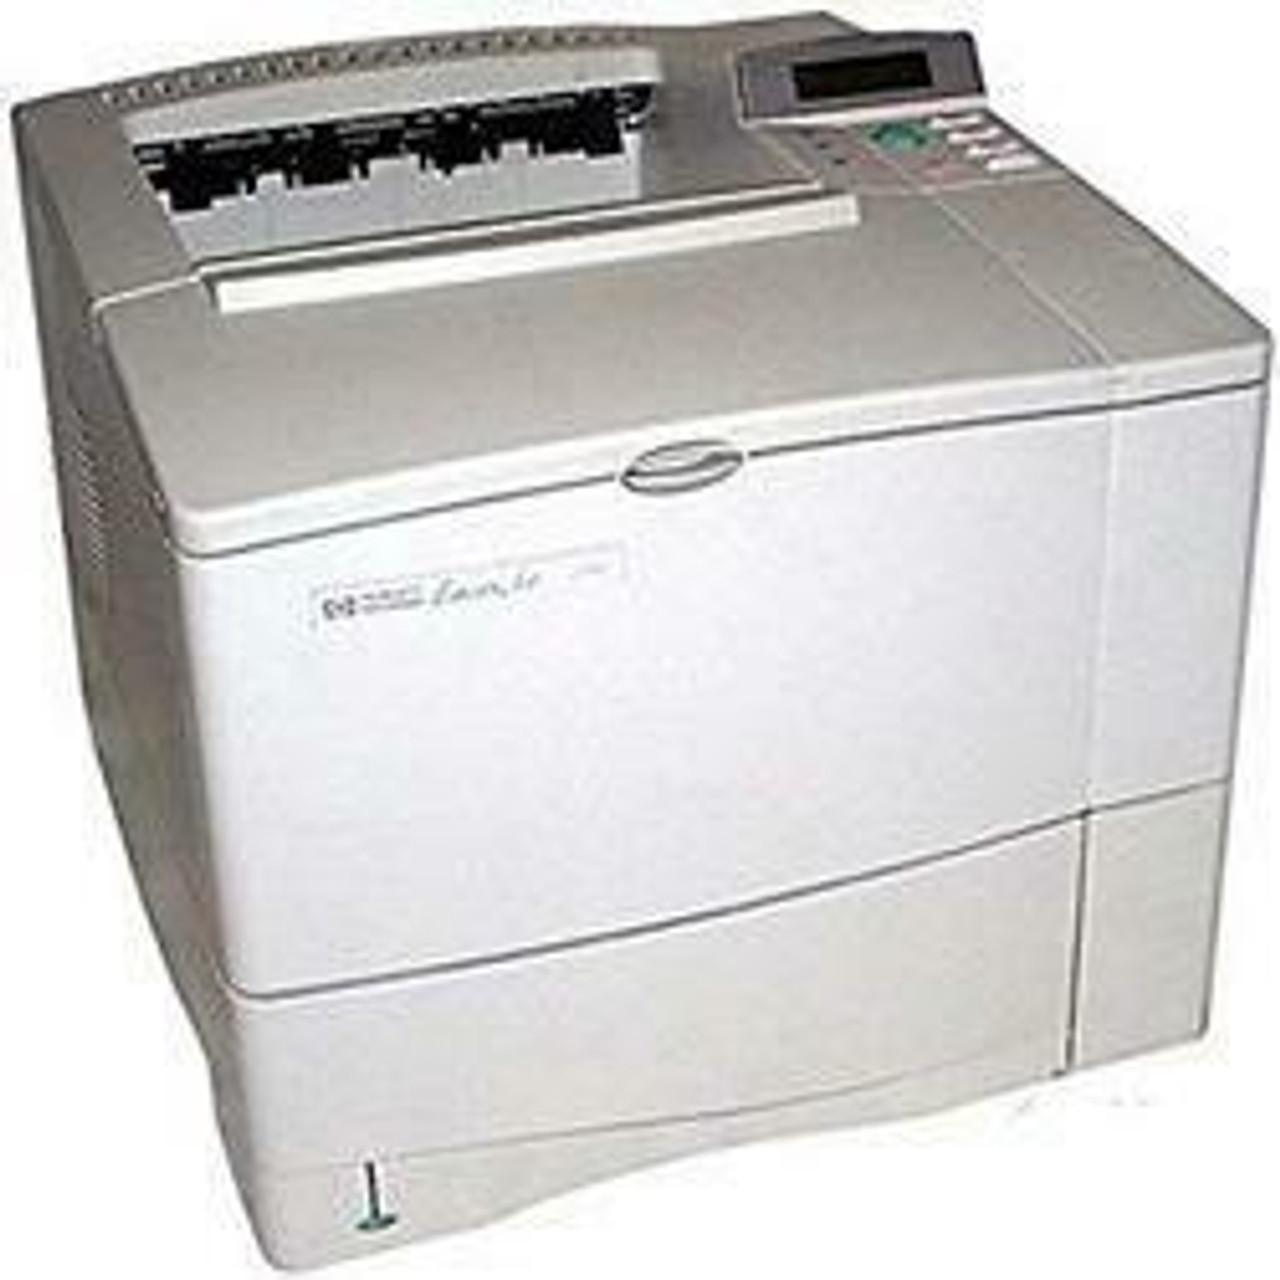 HP LaserJet 4000n